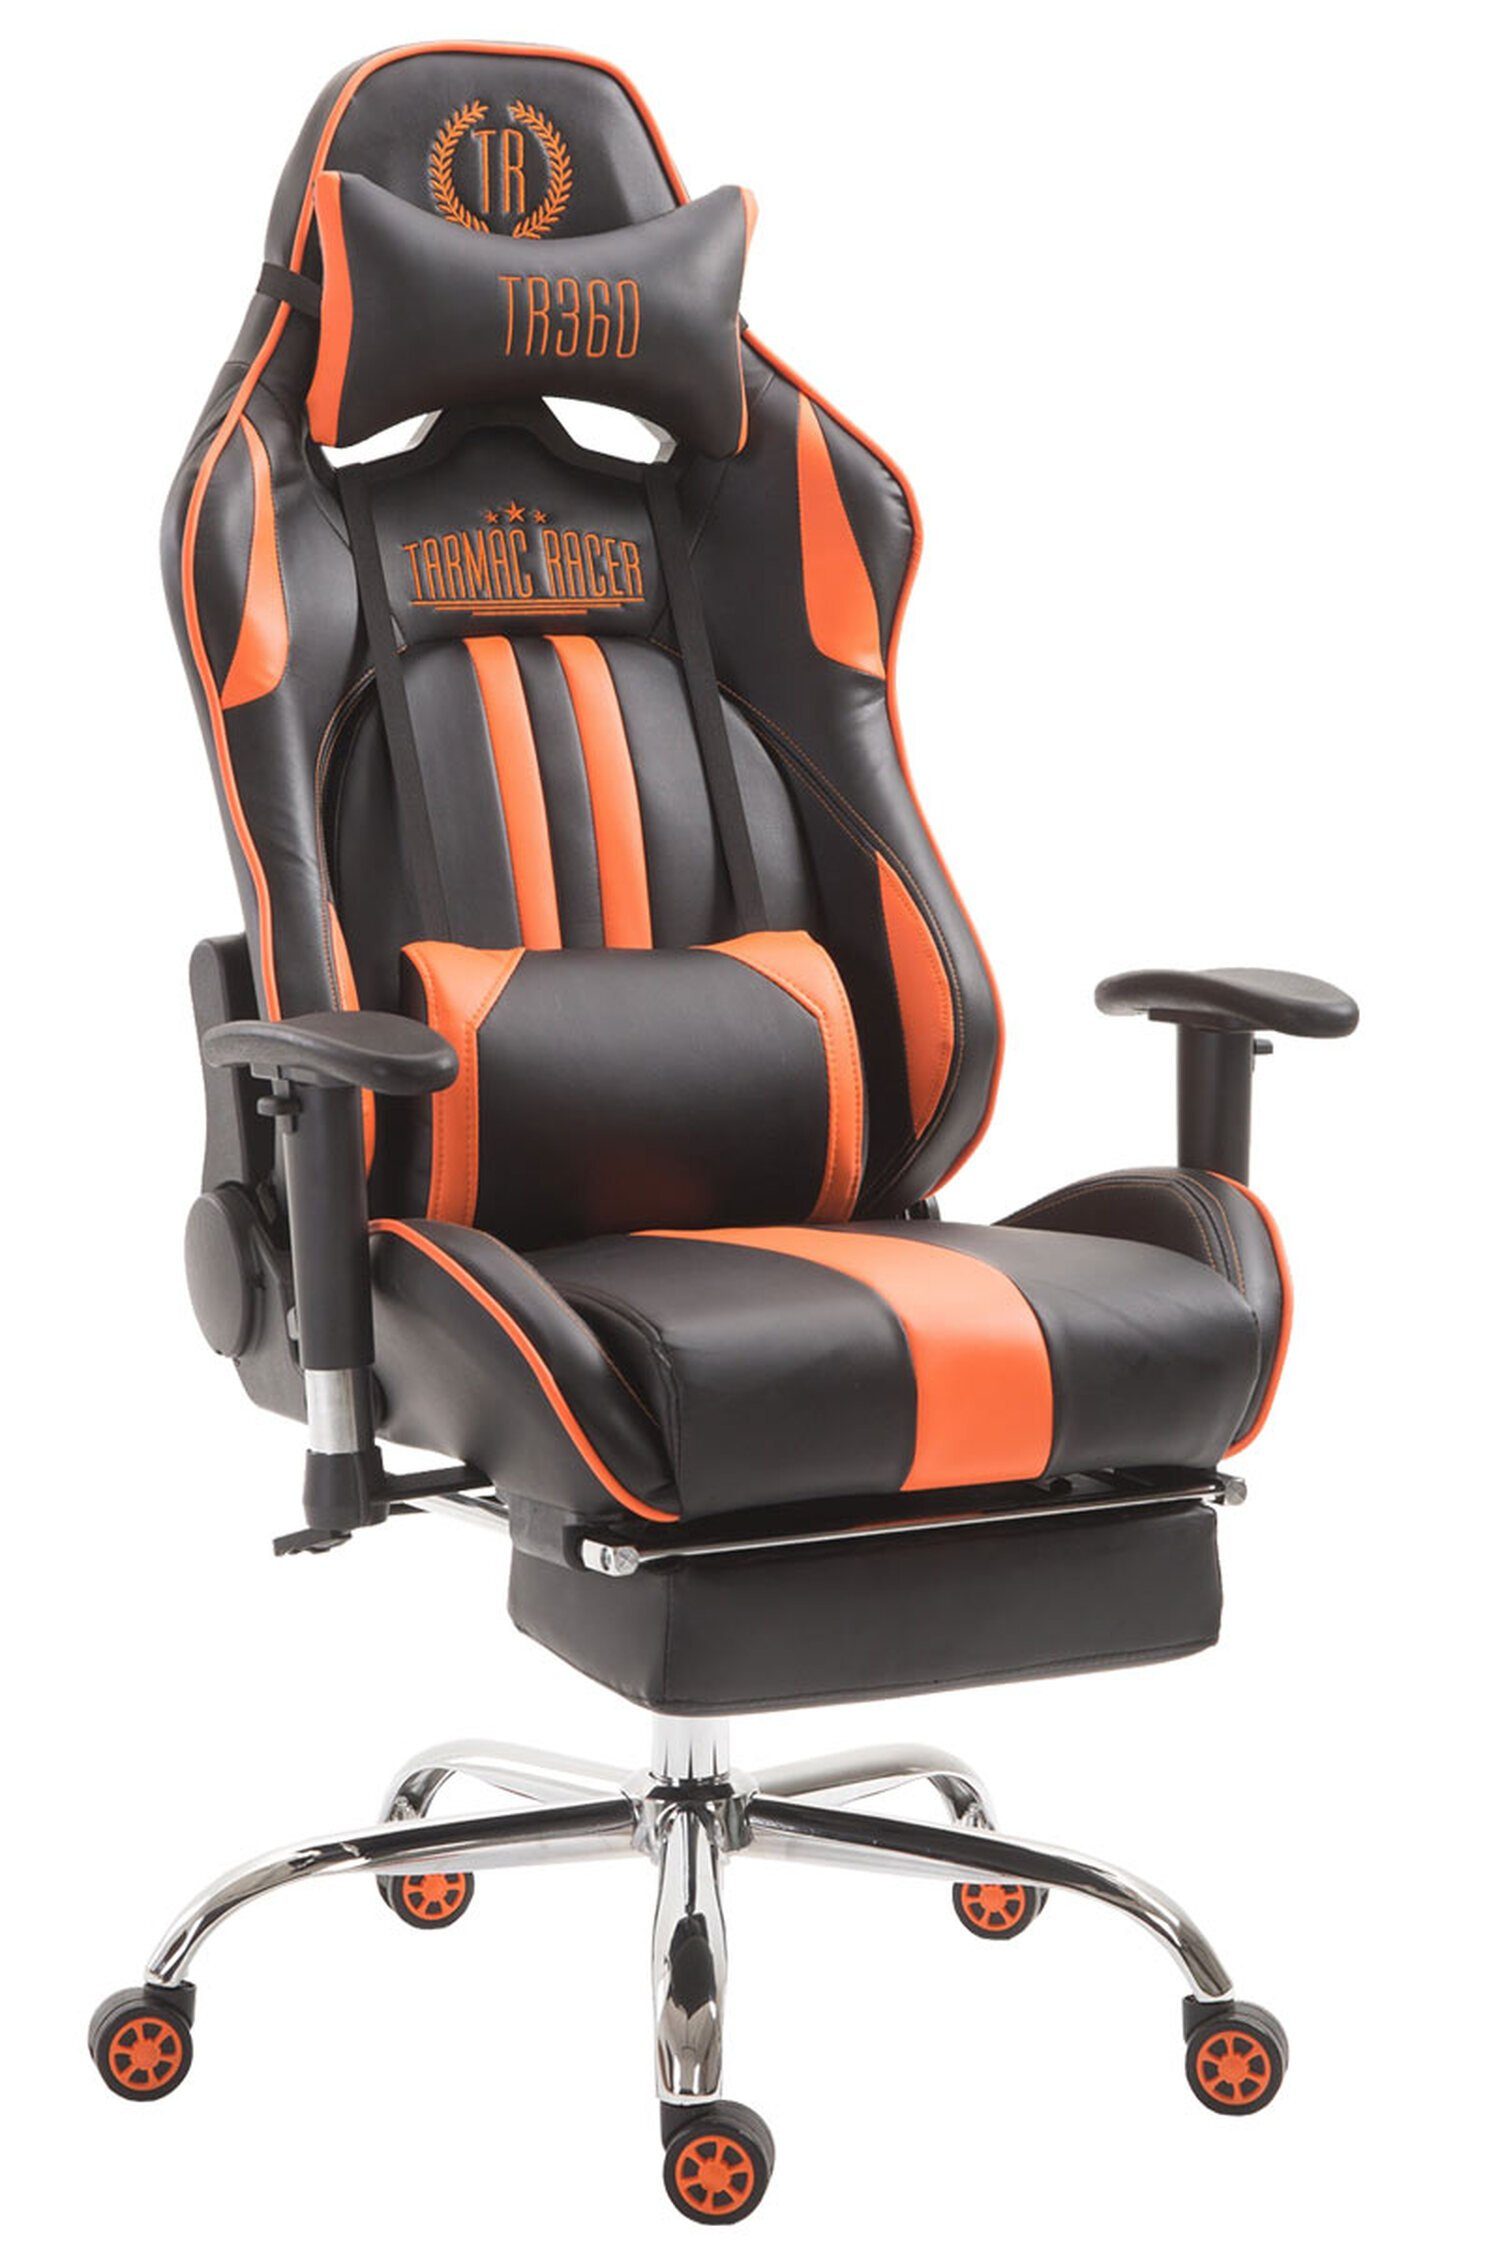 TPFLiving Gaming-Stuhl Limitless-2 mit bequemer Rückenlehne - höhenverstellbar - 360° drehbar (Schreibtischstuhl, Drehstuhl, Gamingstuhl, Racingstuhl, Chefsessel), Gestell: Metall chrom - Sitzfläche: Kunstleder schwarz/orange